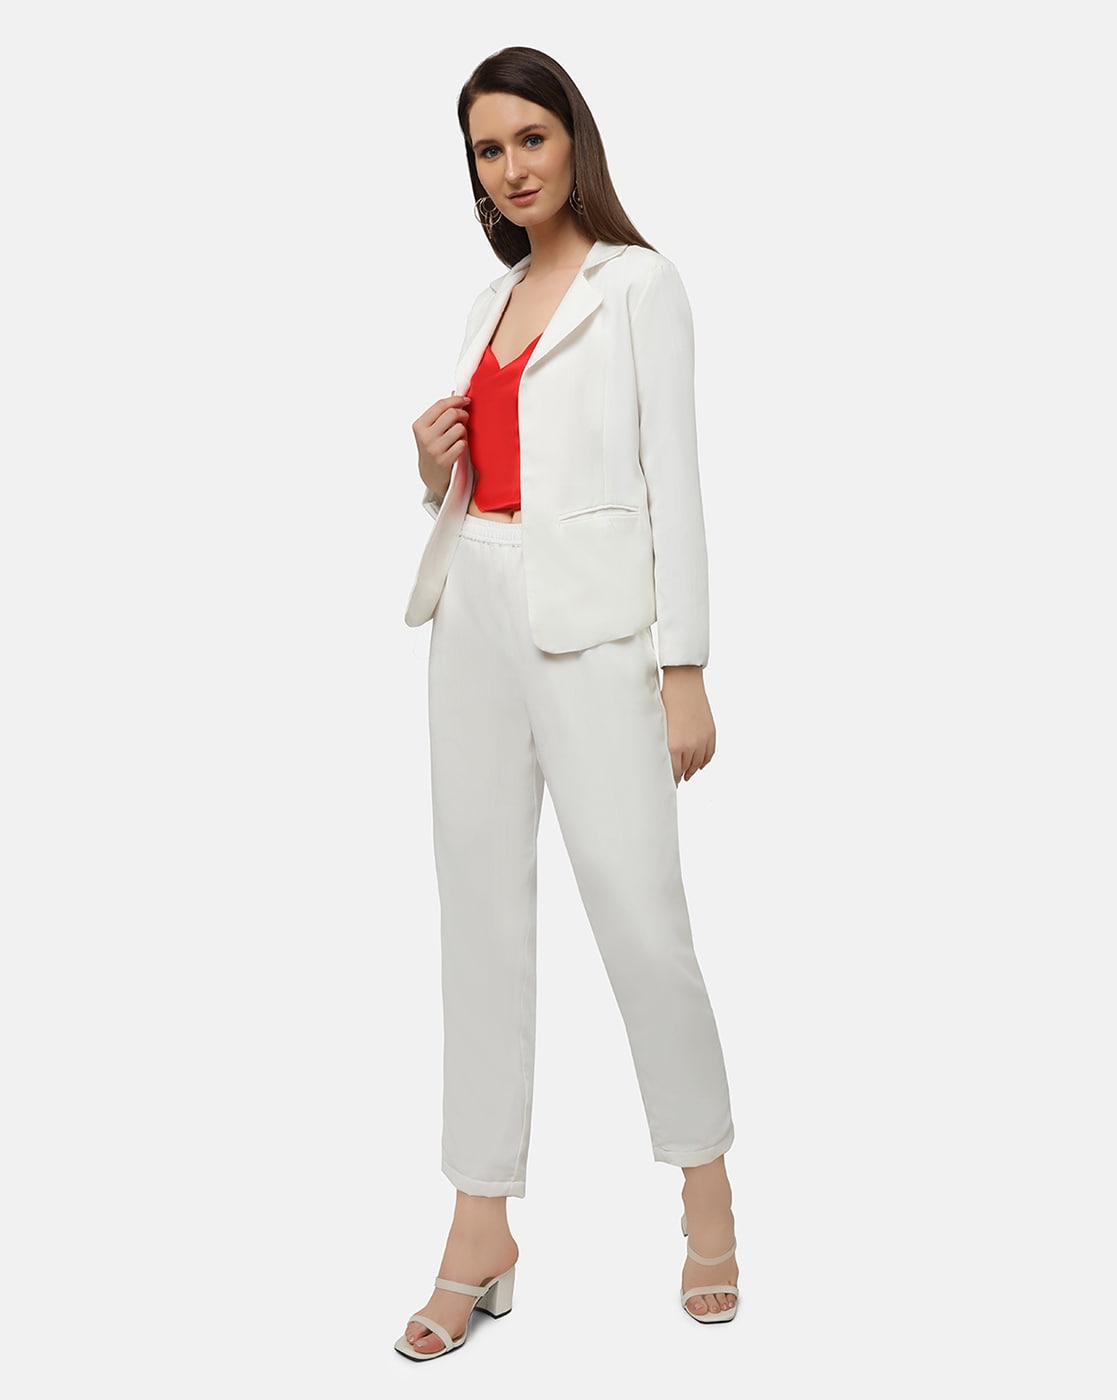 New White Trouser Suit 2 Piece Set Women Office Suits For Women Blazer Set  Elegant Pant Suits Office Uniform Style Custom  Pant Suits  AliExpress